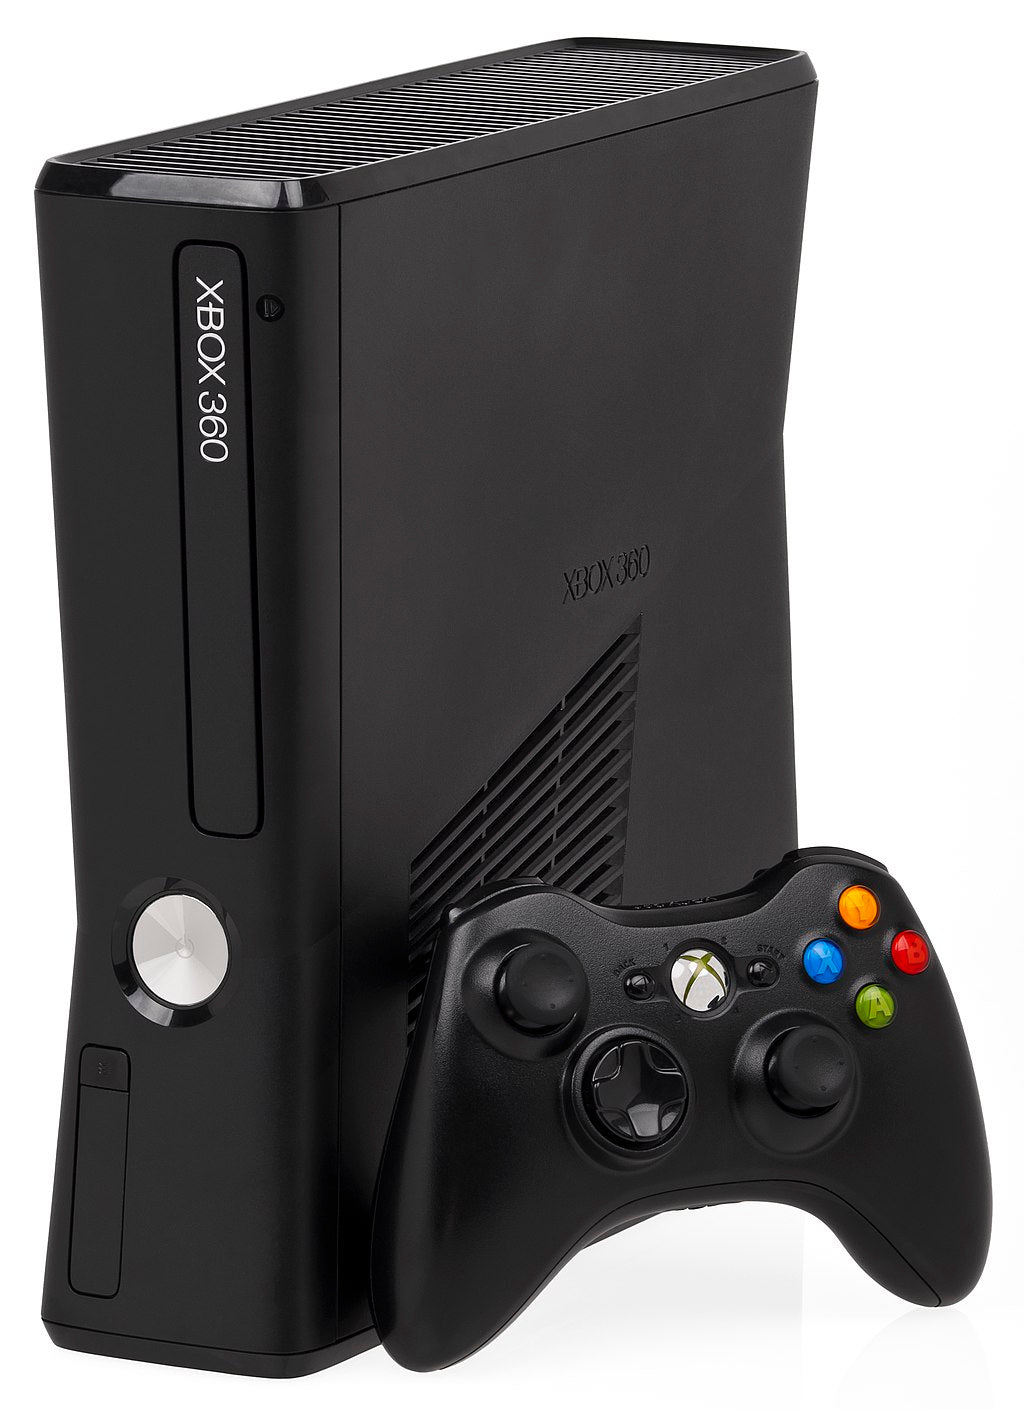 Console | XBOX 360 S | Microsoft Xbox 360 S E Console